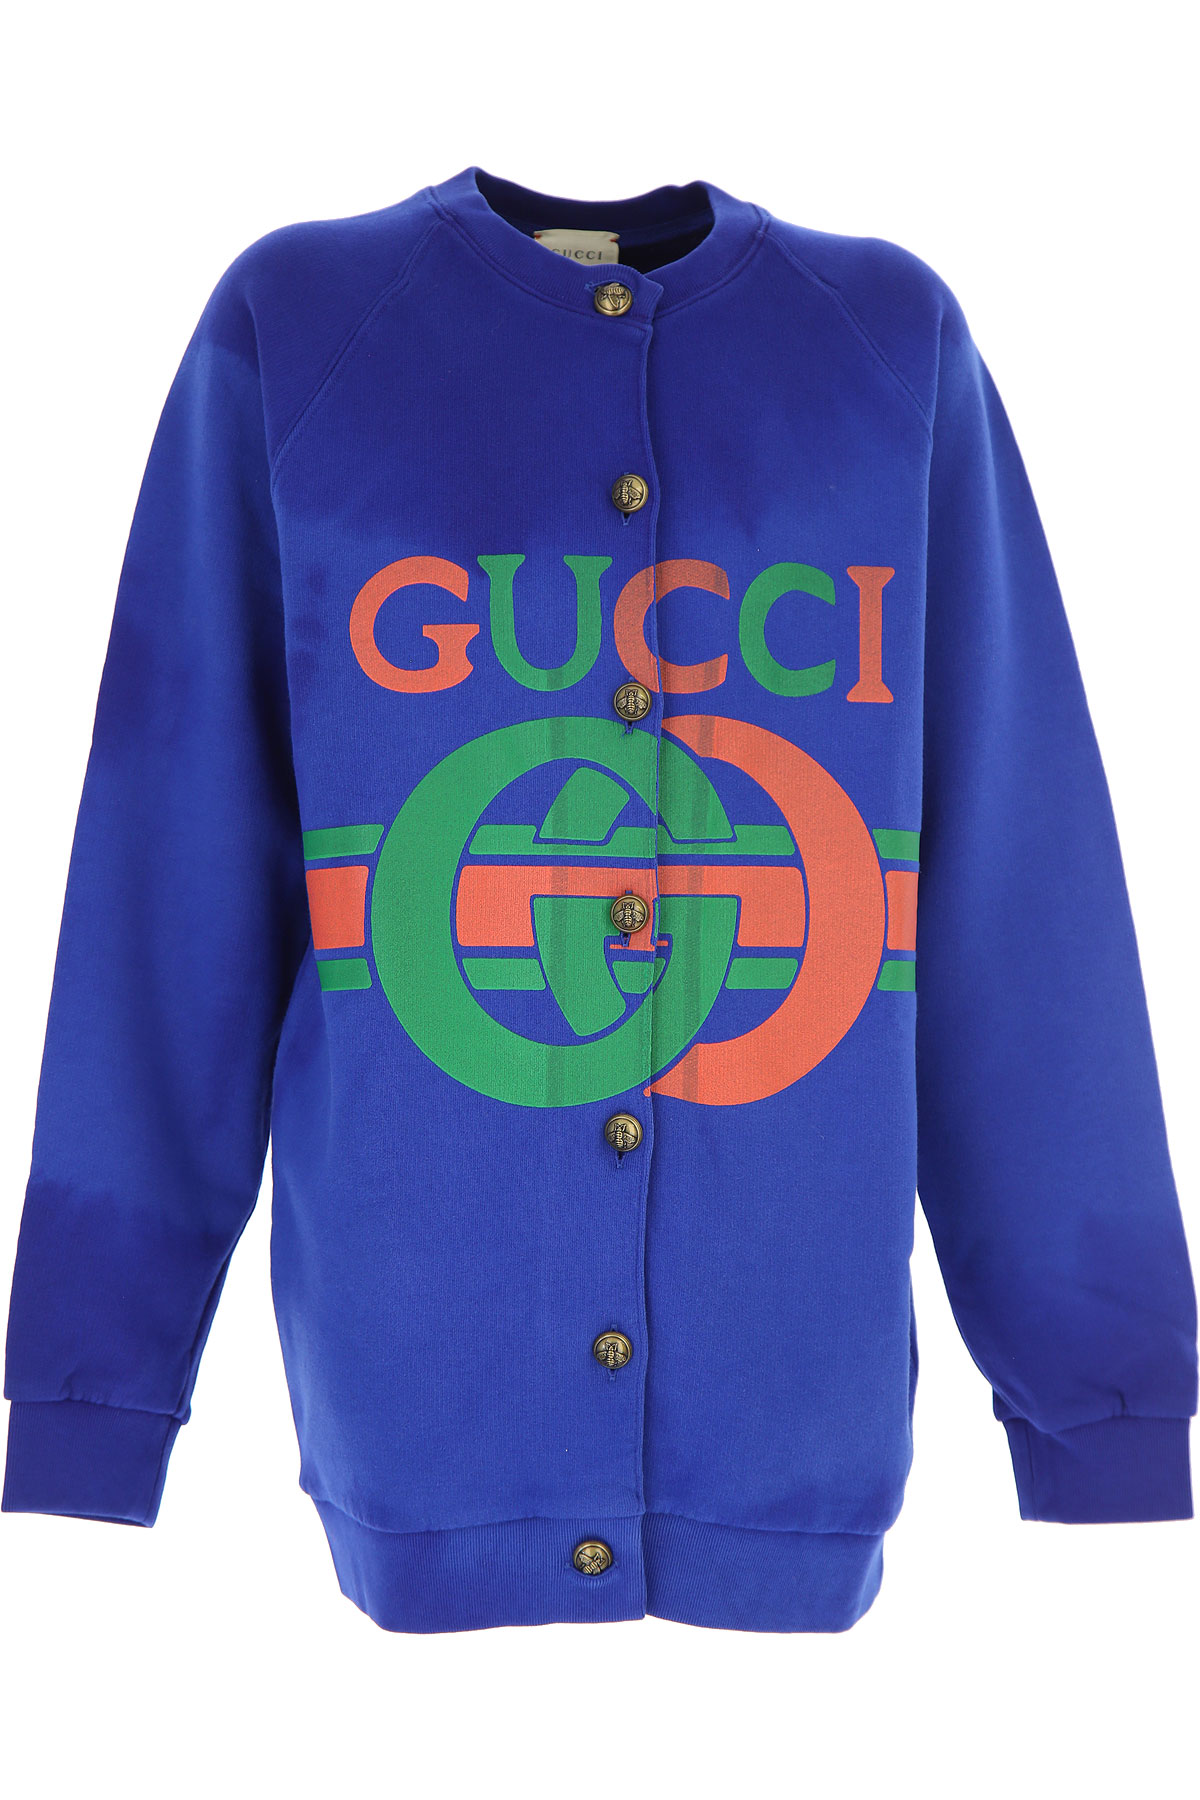 Gucci Kinder Sweatshirt & Kapuzenpullover für Mädchen Günstig im Sale, Blau, Baumwolle, 2017, 6Y 8Y